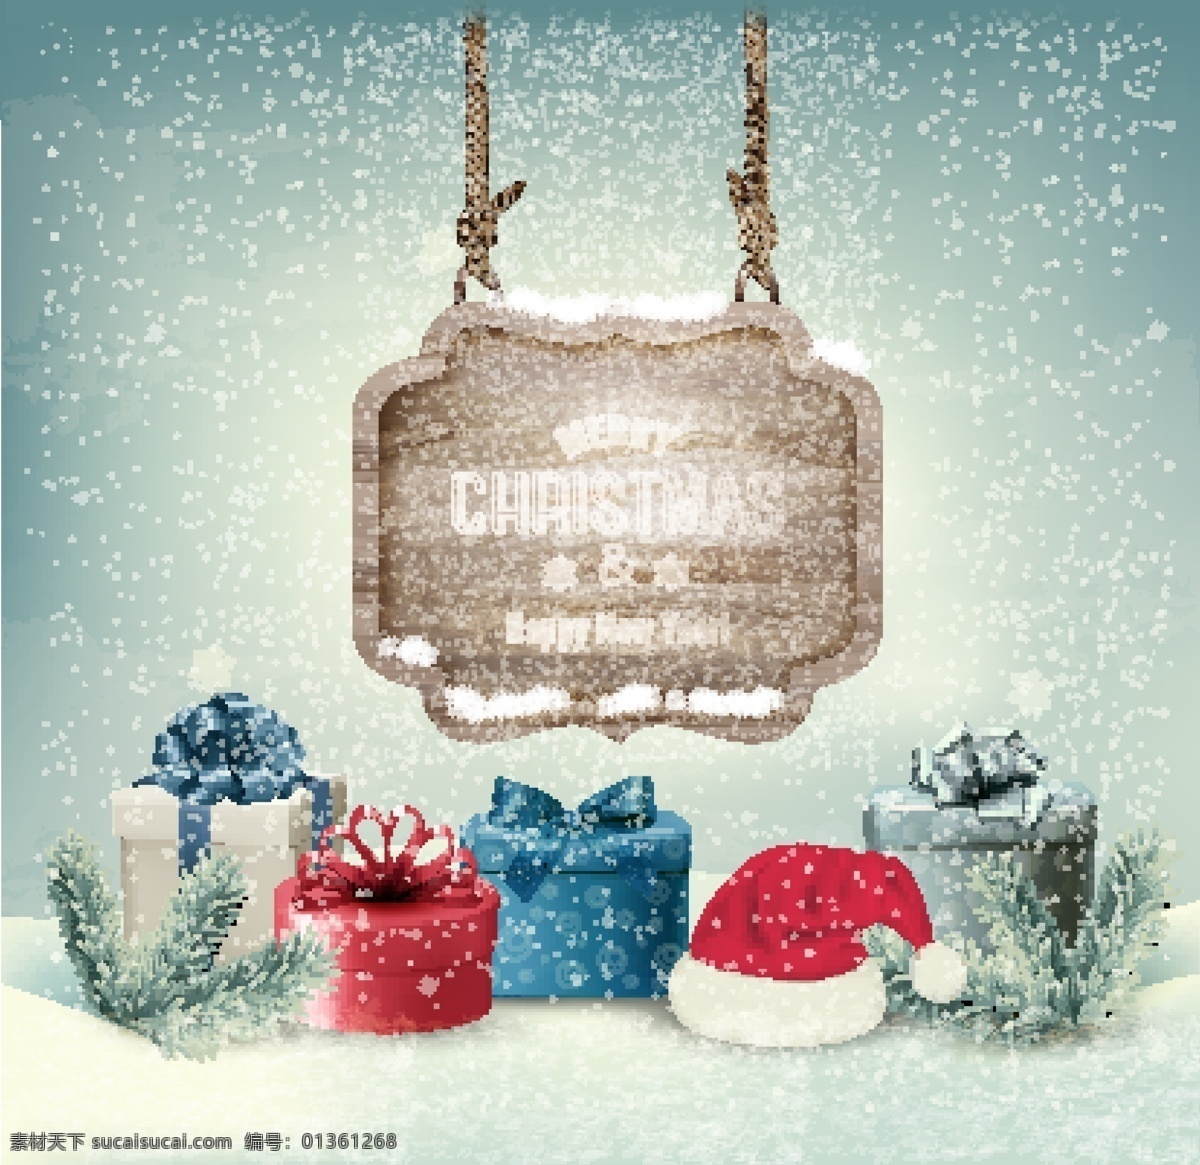 圣诞礼物 圣诞节 新年背景 木板 圣诞装饰素材 圣诞海报背景 2015 年 新年 羊年 文化艺术 节日庆祝 矢量